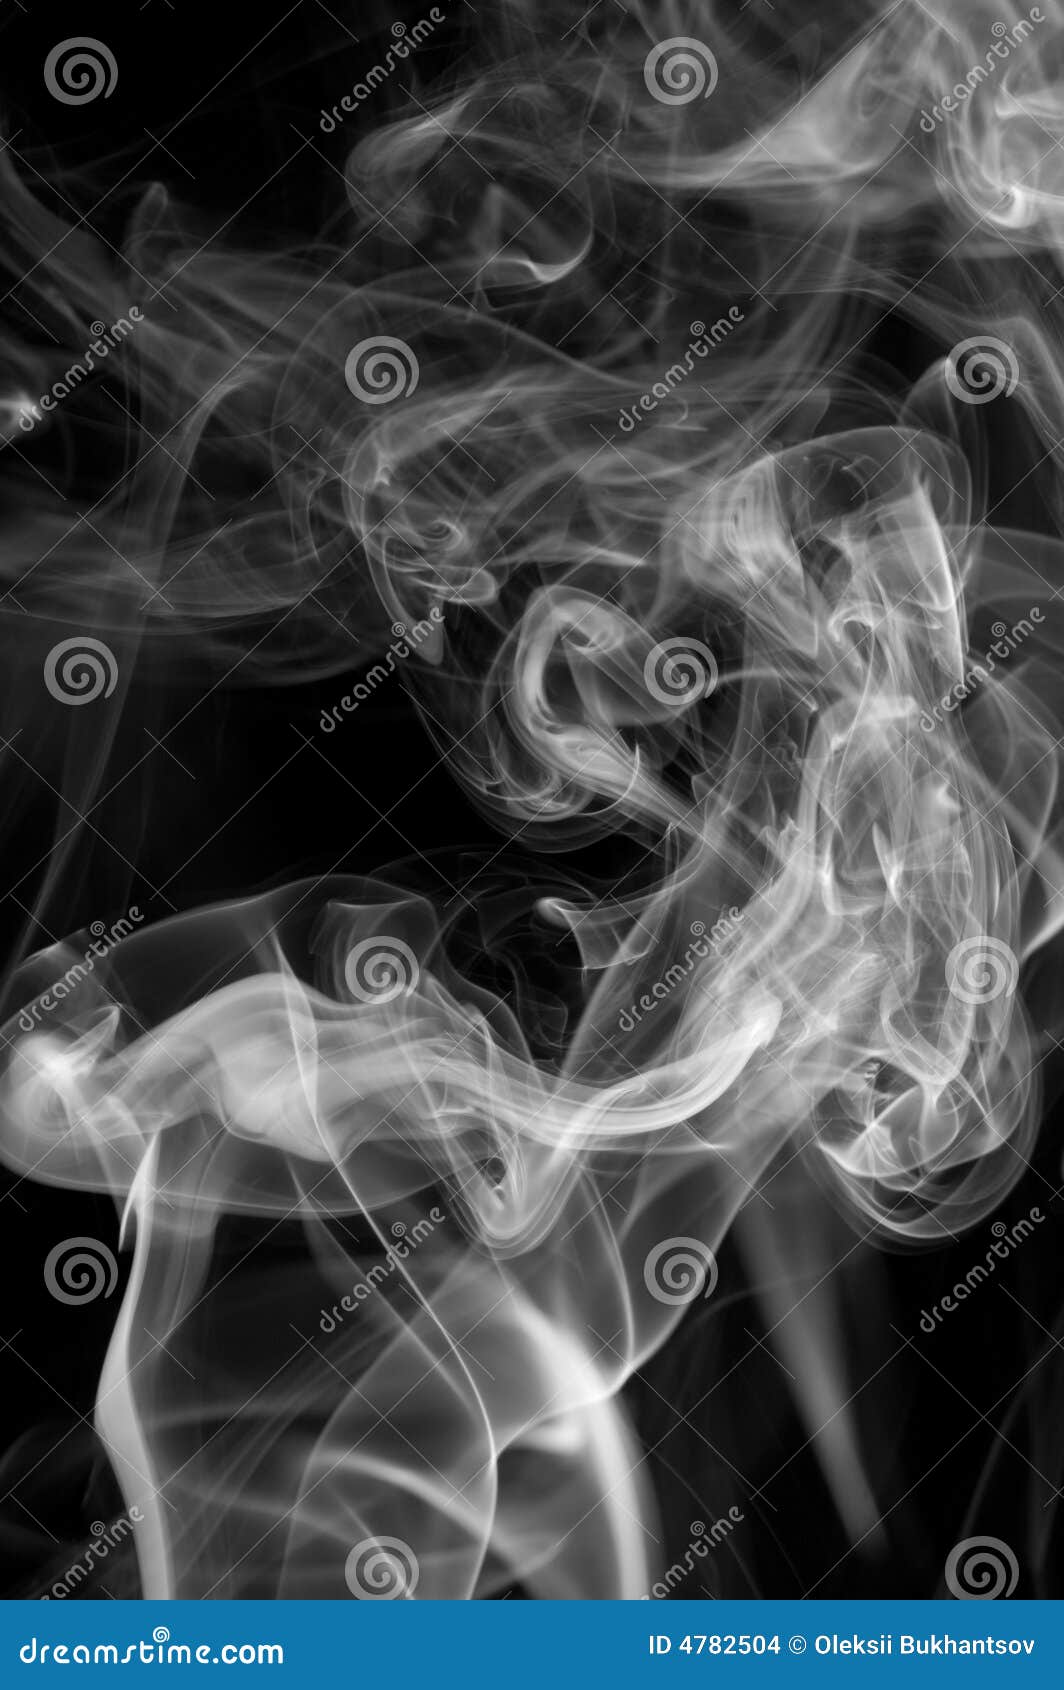 Cigarette smoke background stock photo. Image of cigarette - 4782504